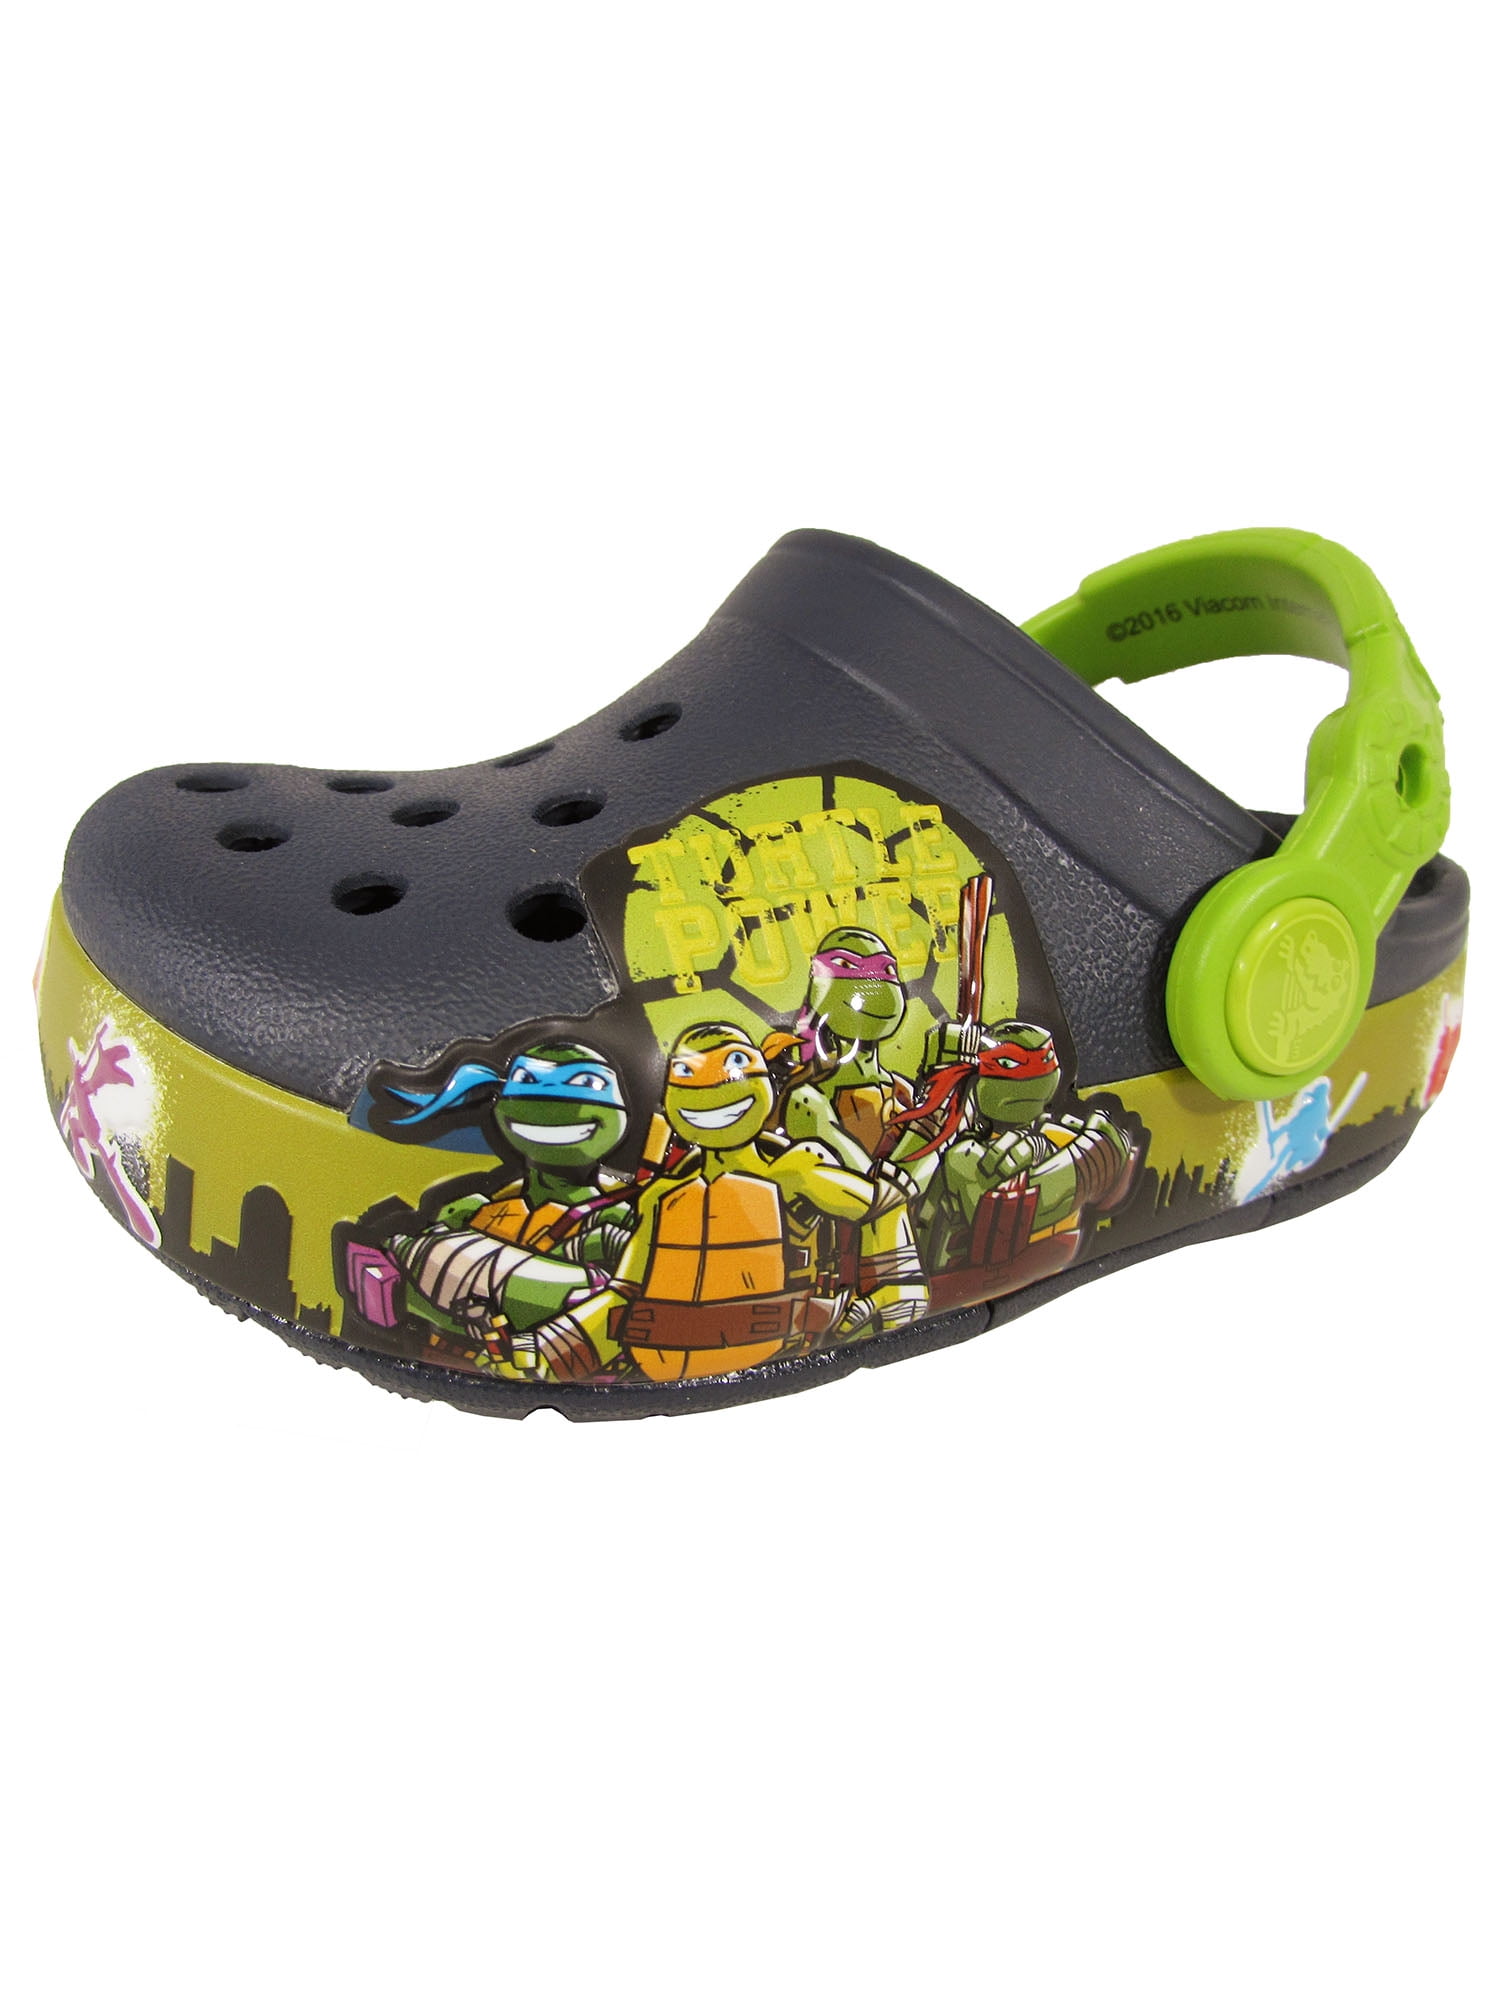 Teenage Mutant Ninja Turtles Boys Slippers